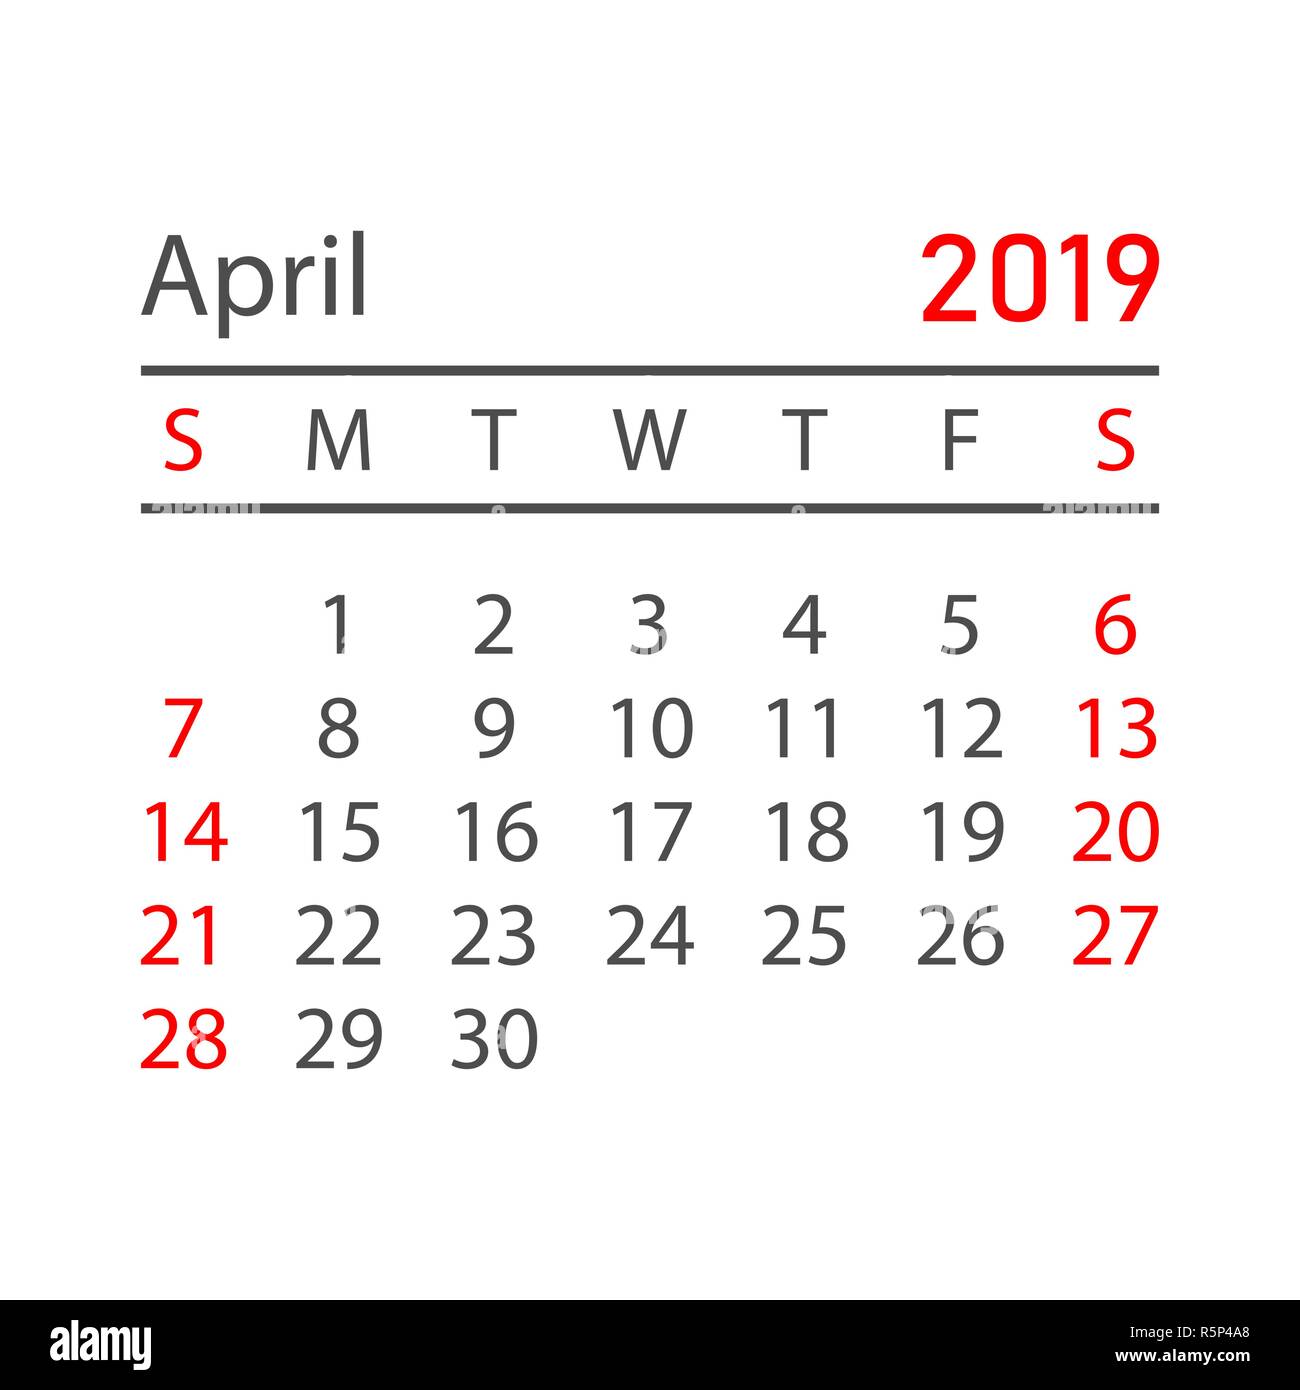 Calendario Abril 2019 año en estilo sencillo. Planificador de calendario  plantilla de diseño. Recordatorio de la agenda mensual del mes de abril.  Business ilustración vectorial Imagen Vector de stock - Alamy